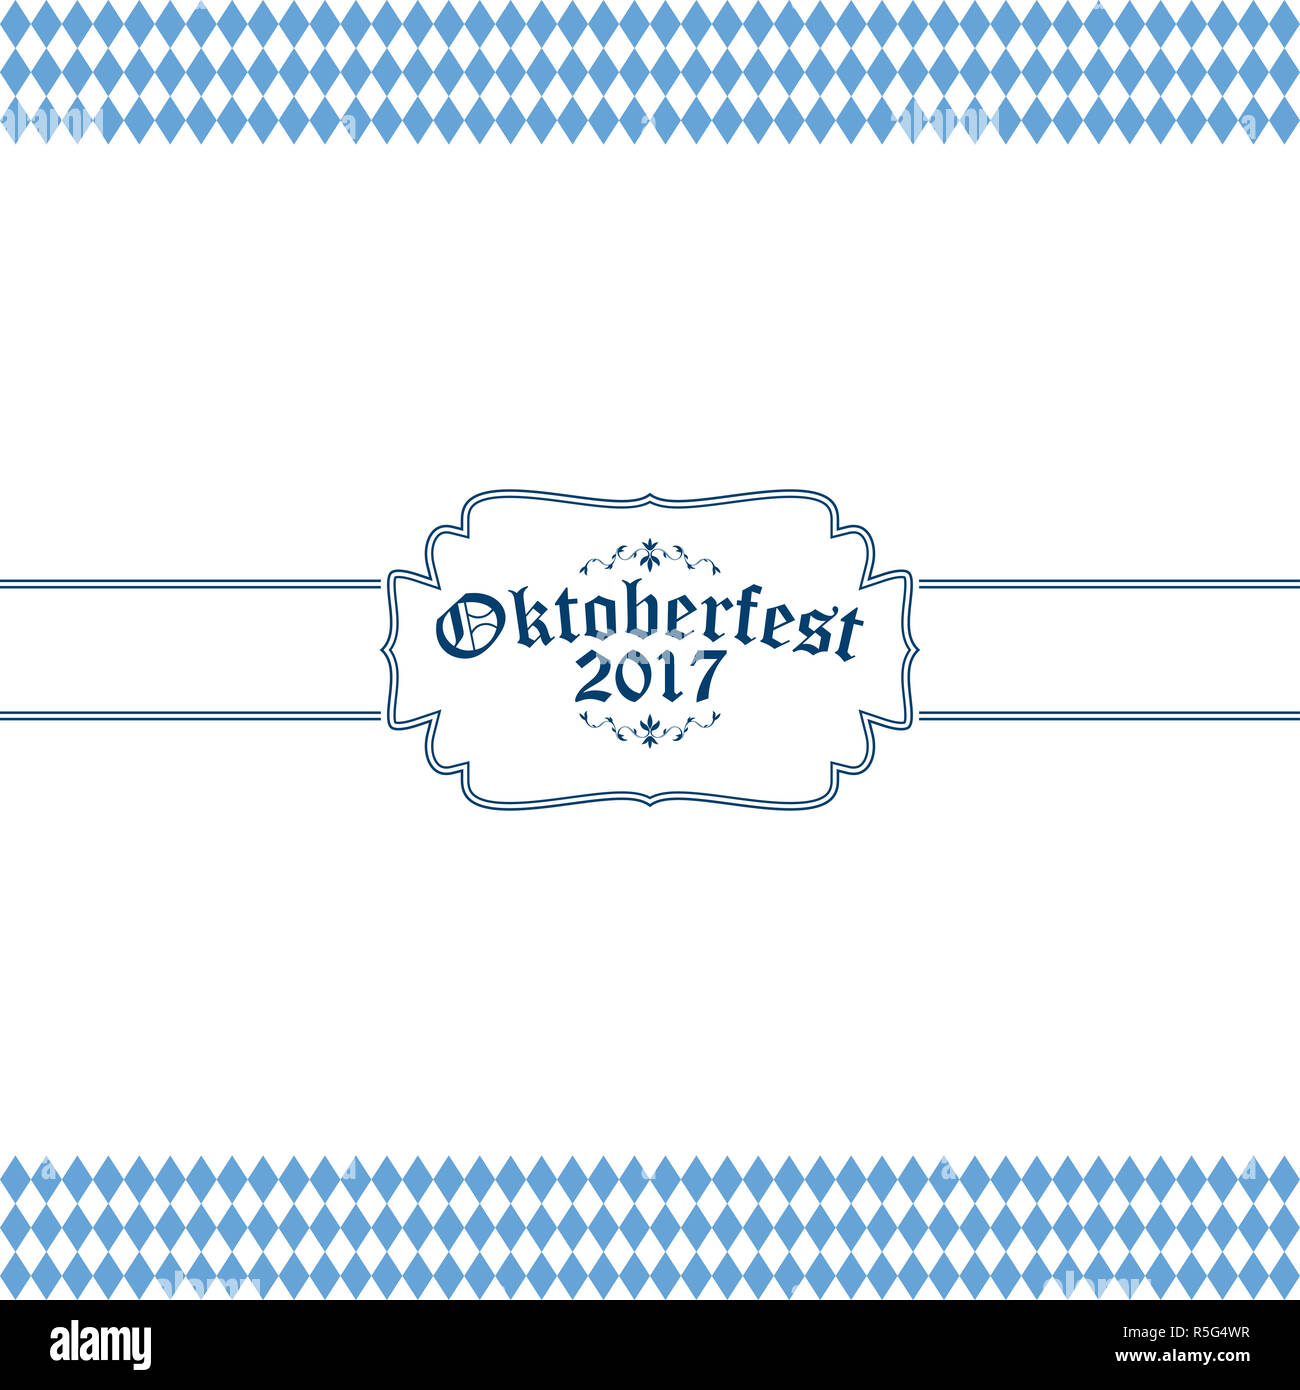 Oktoberfest con sfondo blu-bianco motivo a scacchi Foto Stock